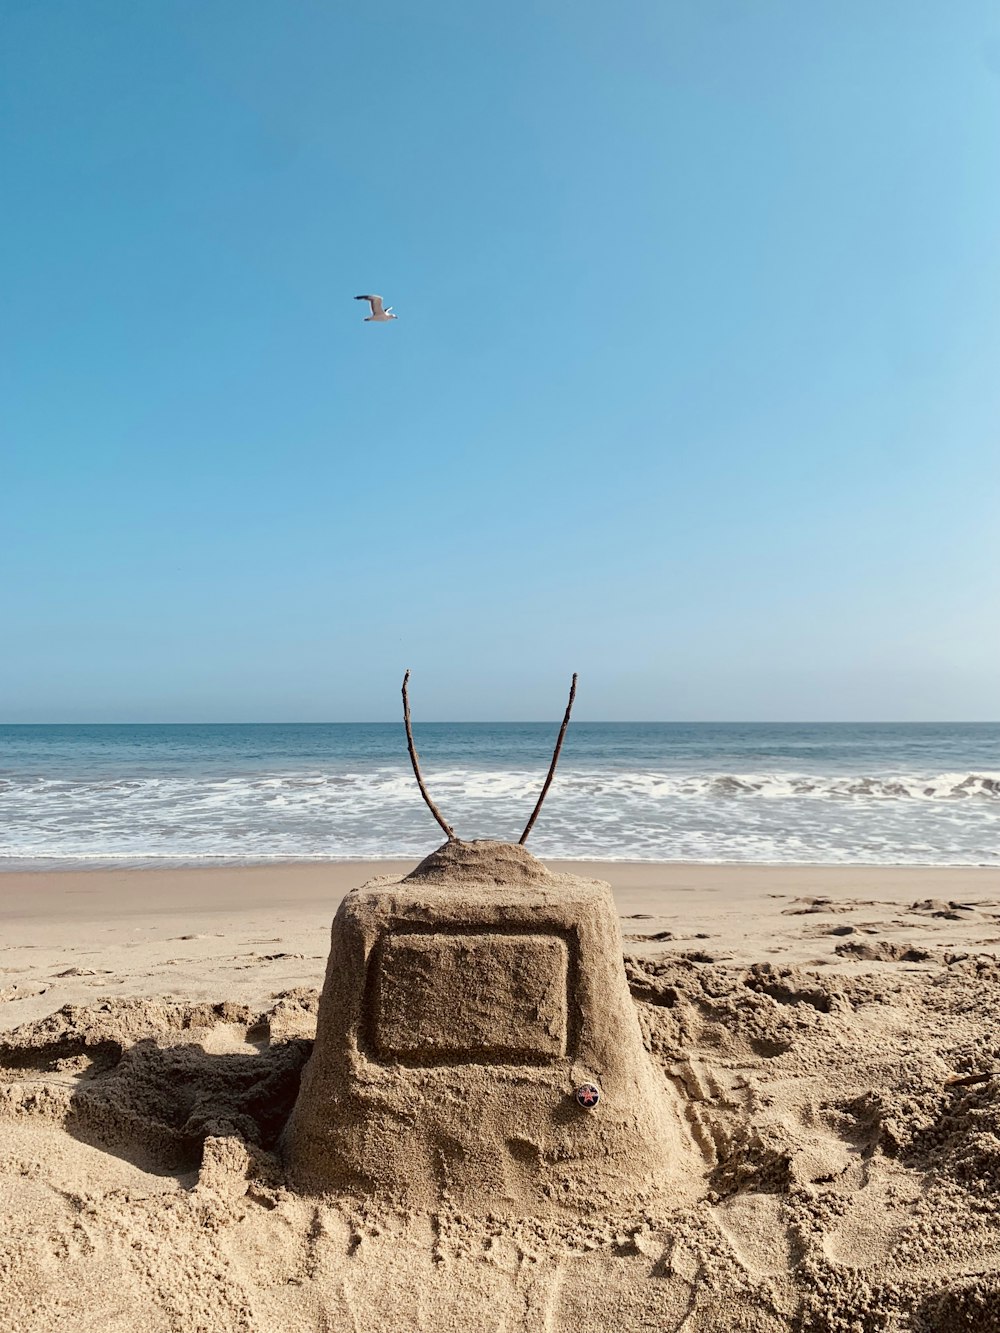 a sand castle on a beach